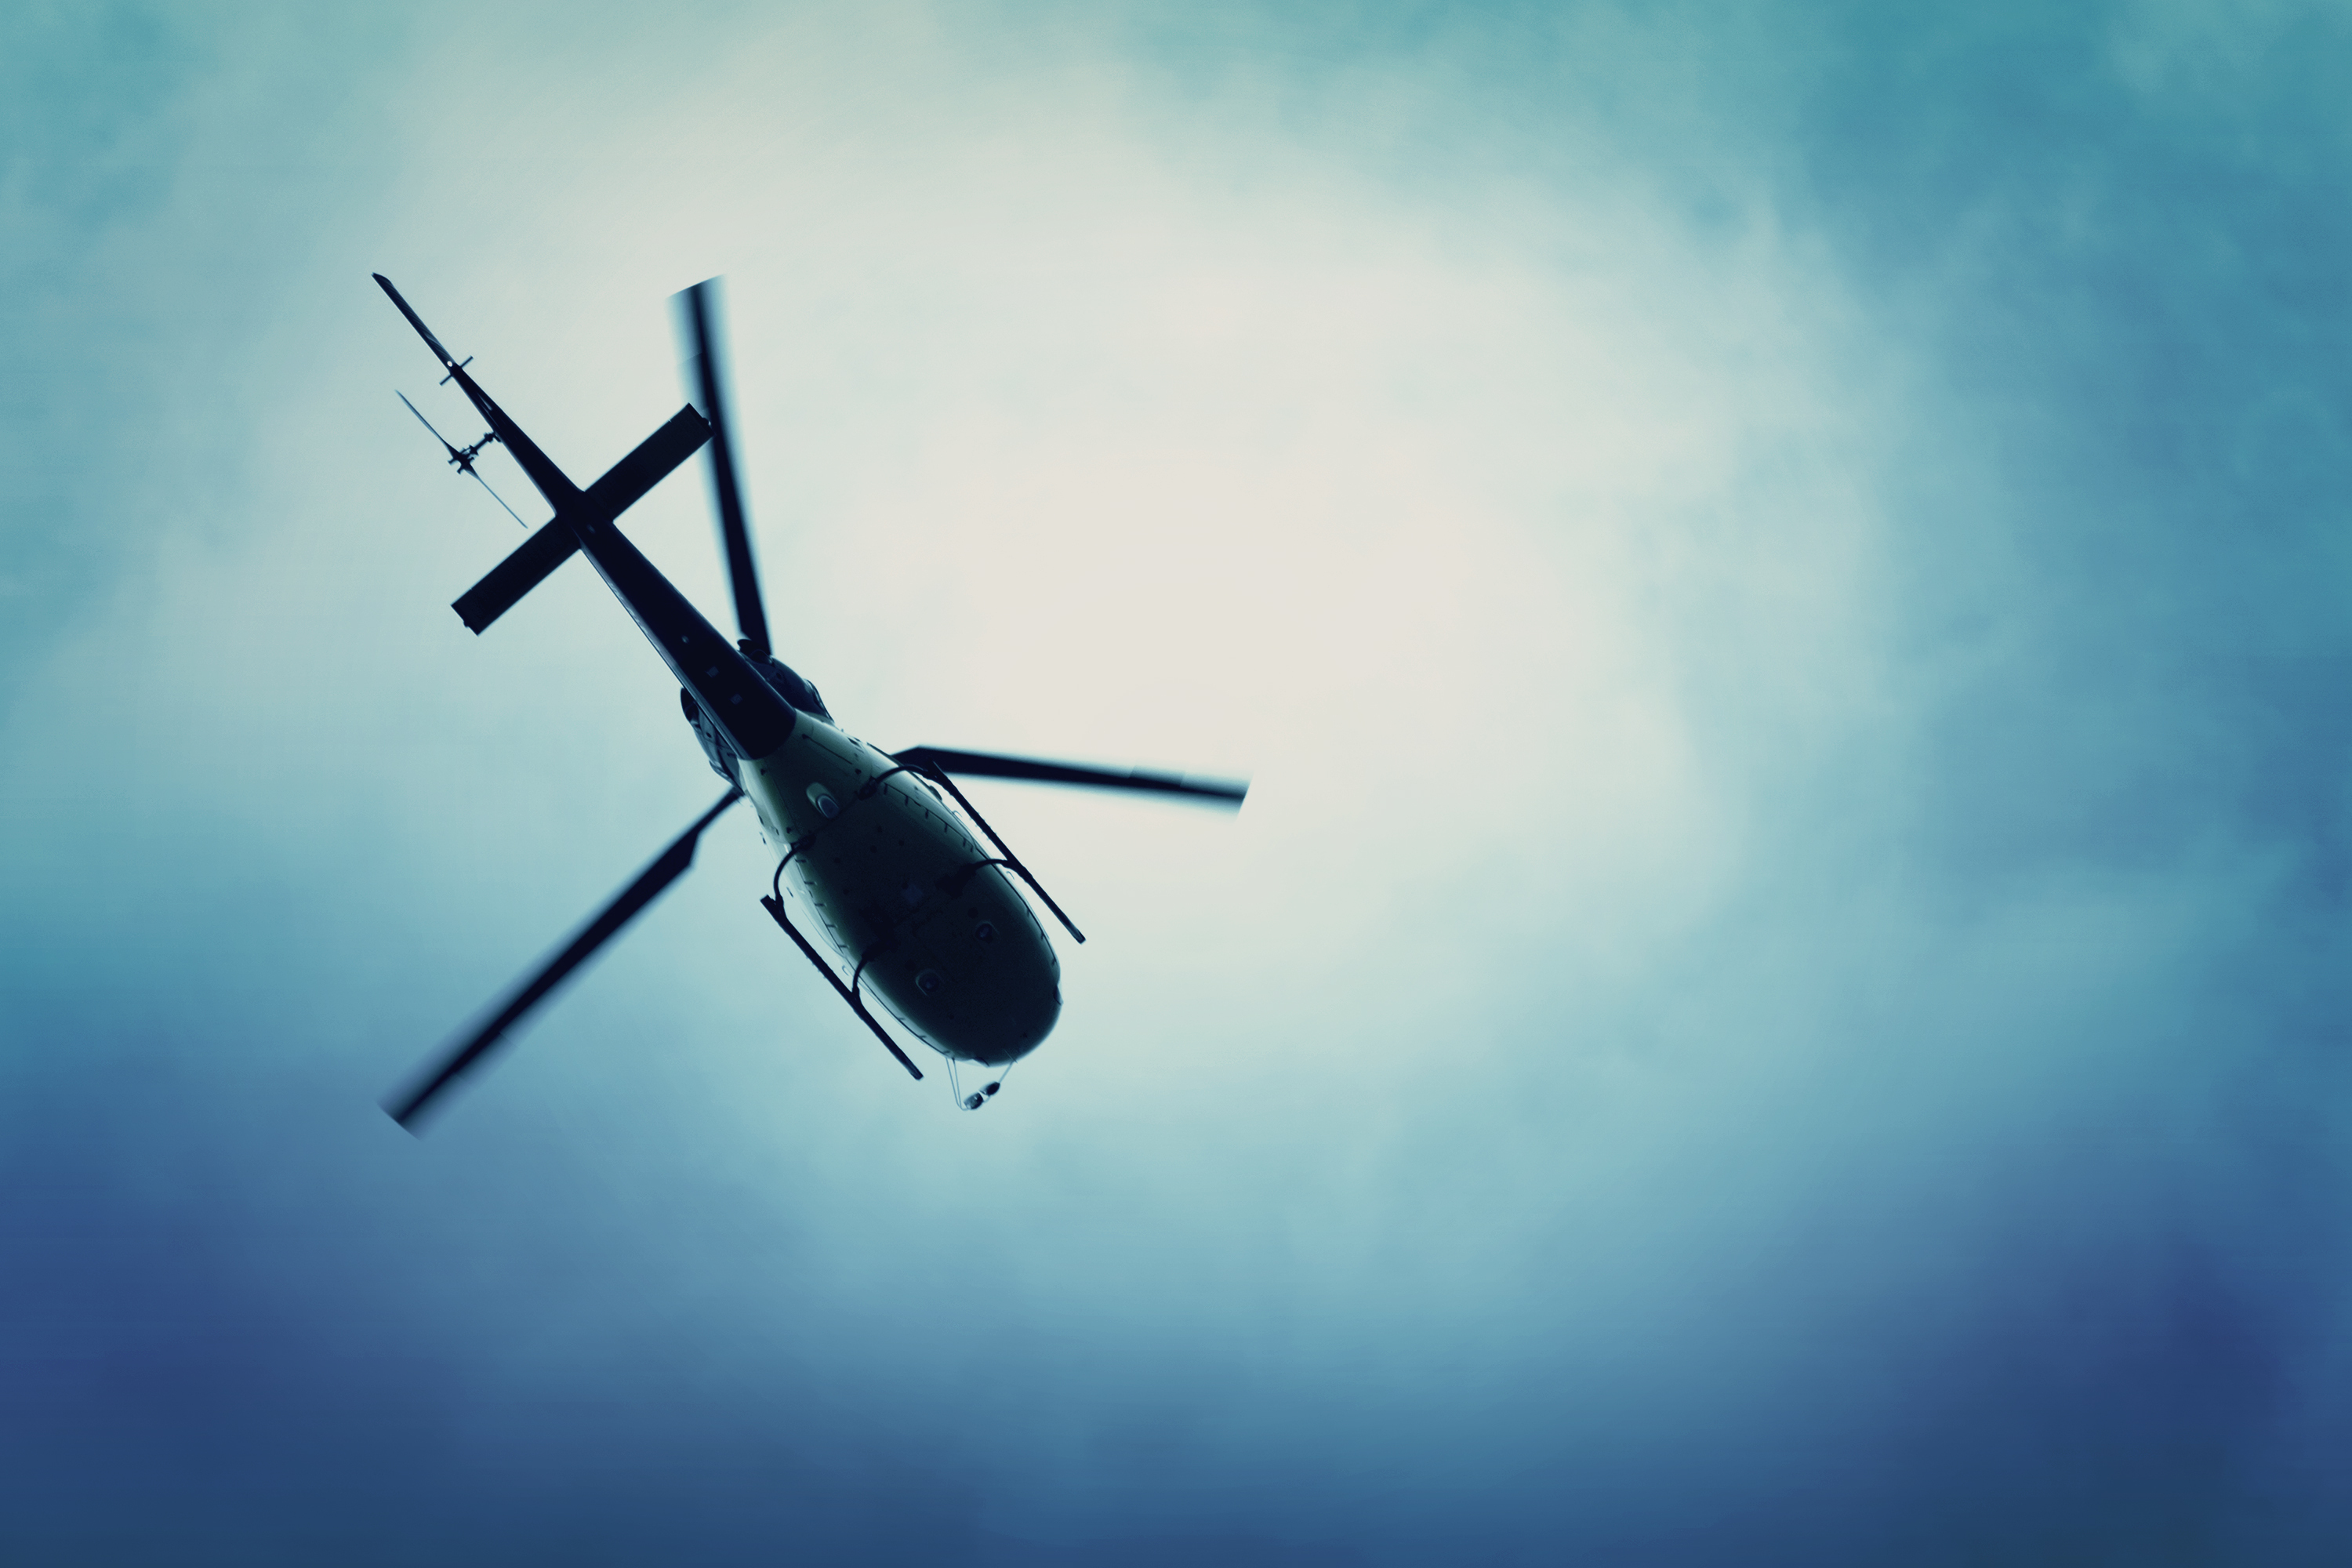 Ein Hubschrauber fliegt in den blauen Himmel. | Quelle: Shutterstock